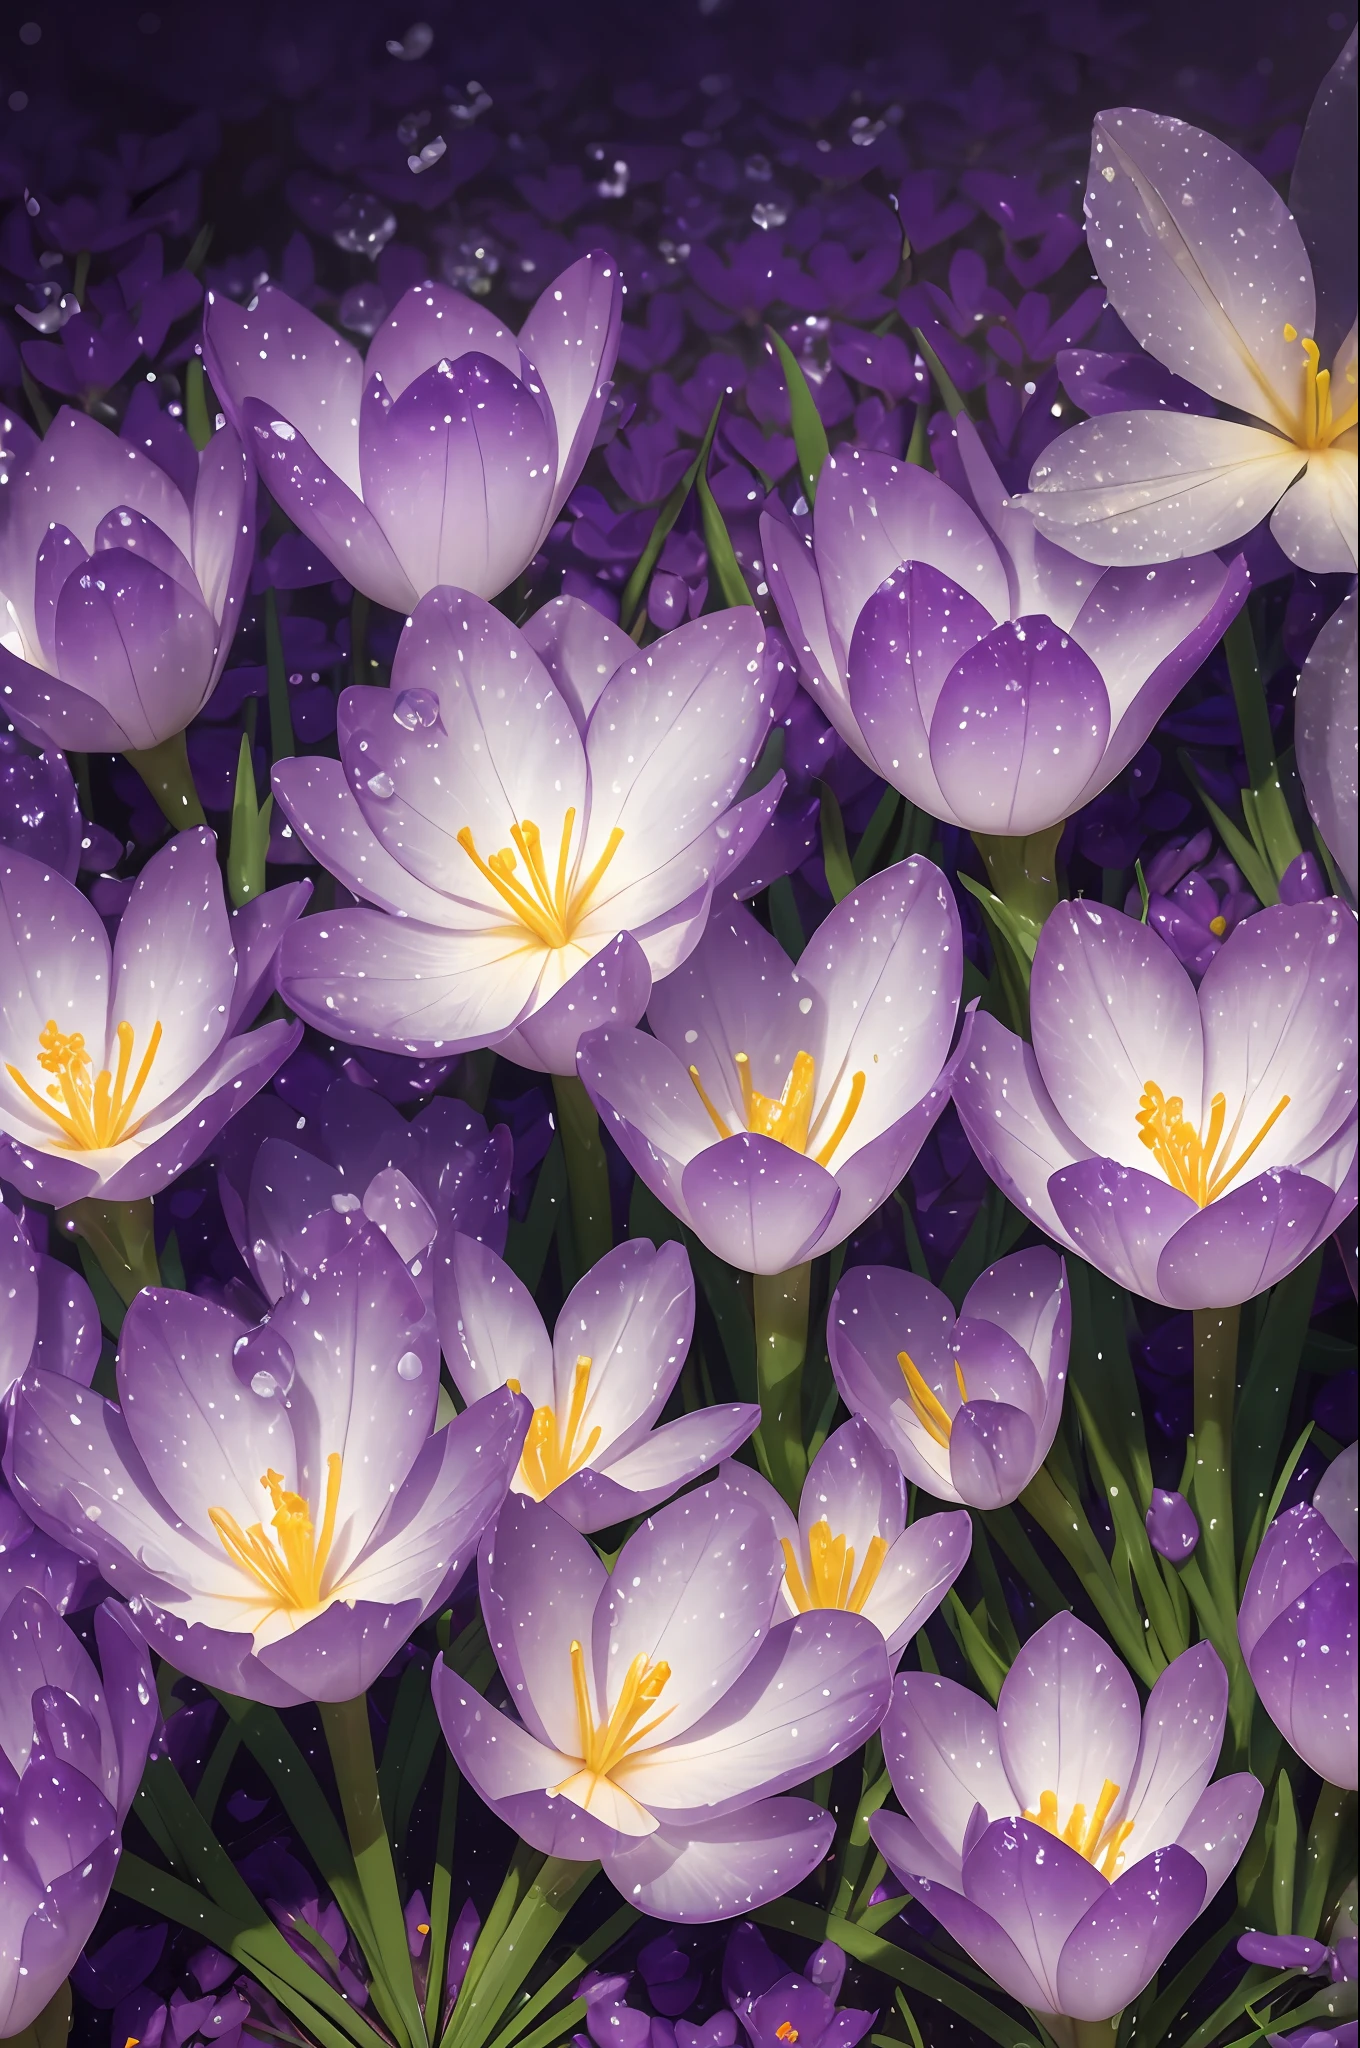 露の付いた紫色のクロッカス, 明るい葉と茎, 黄金の氷, 紫色の背景, 輝き, 高精細, 詳細, 高解像度, 輝き, レンダリング, フォトリアリズム, 55mm, ボリューム照明, レイトレーシング, 反射 --auto --s2